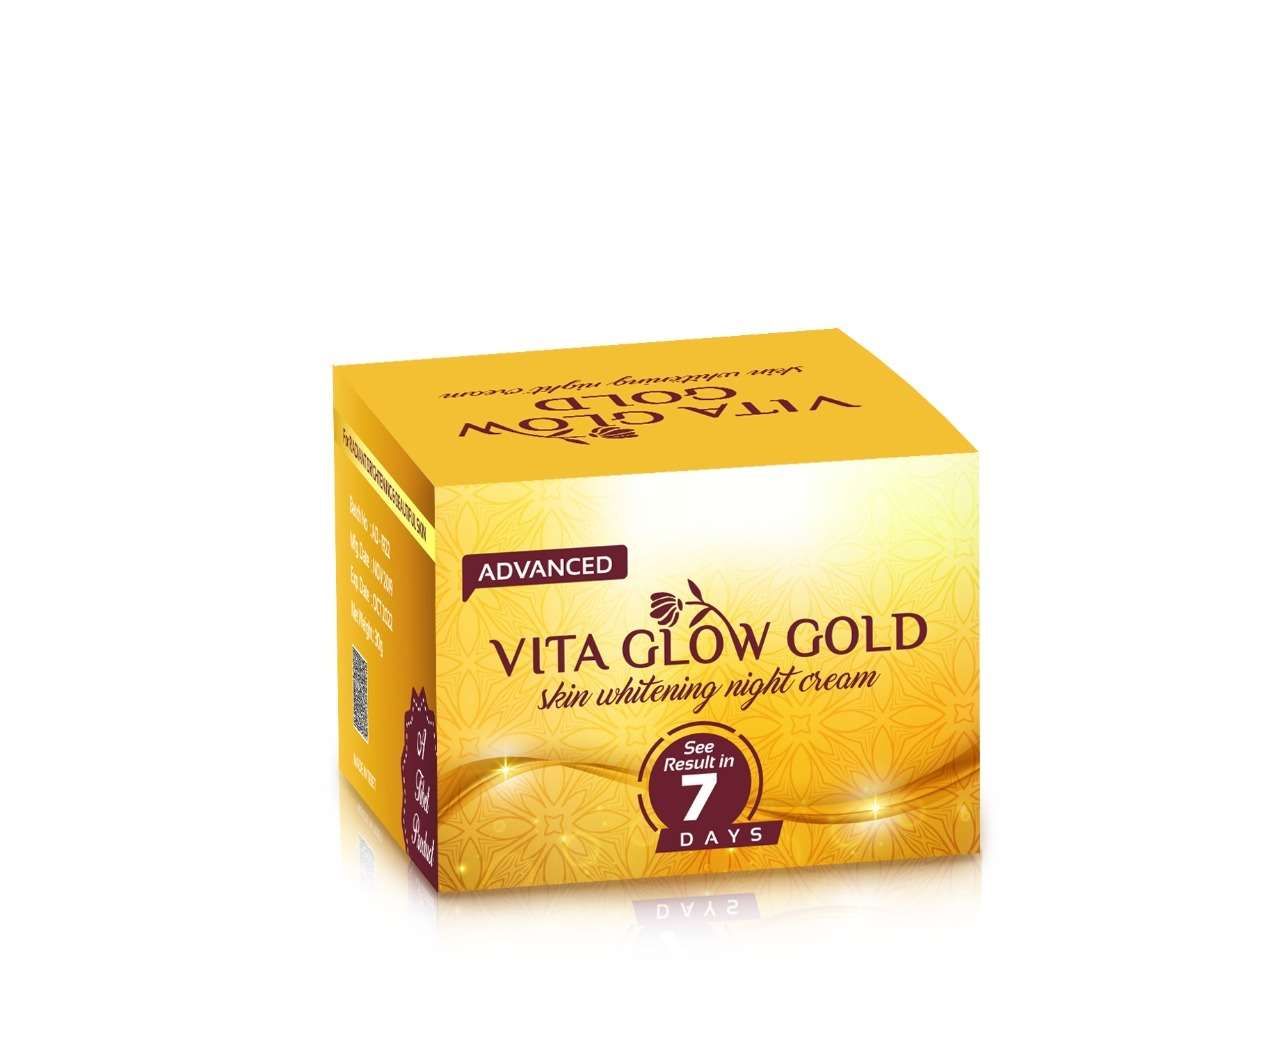 Vita Glow Gold whitening night cream